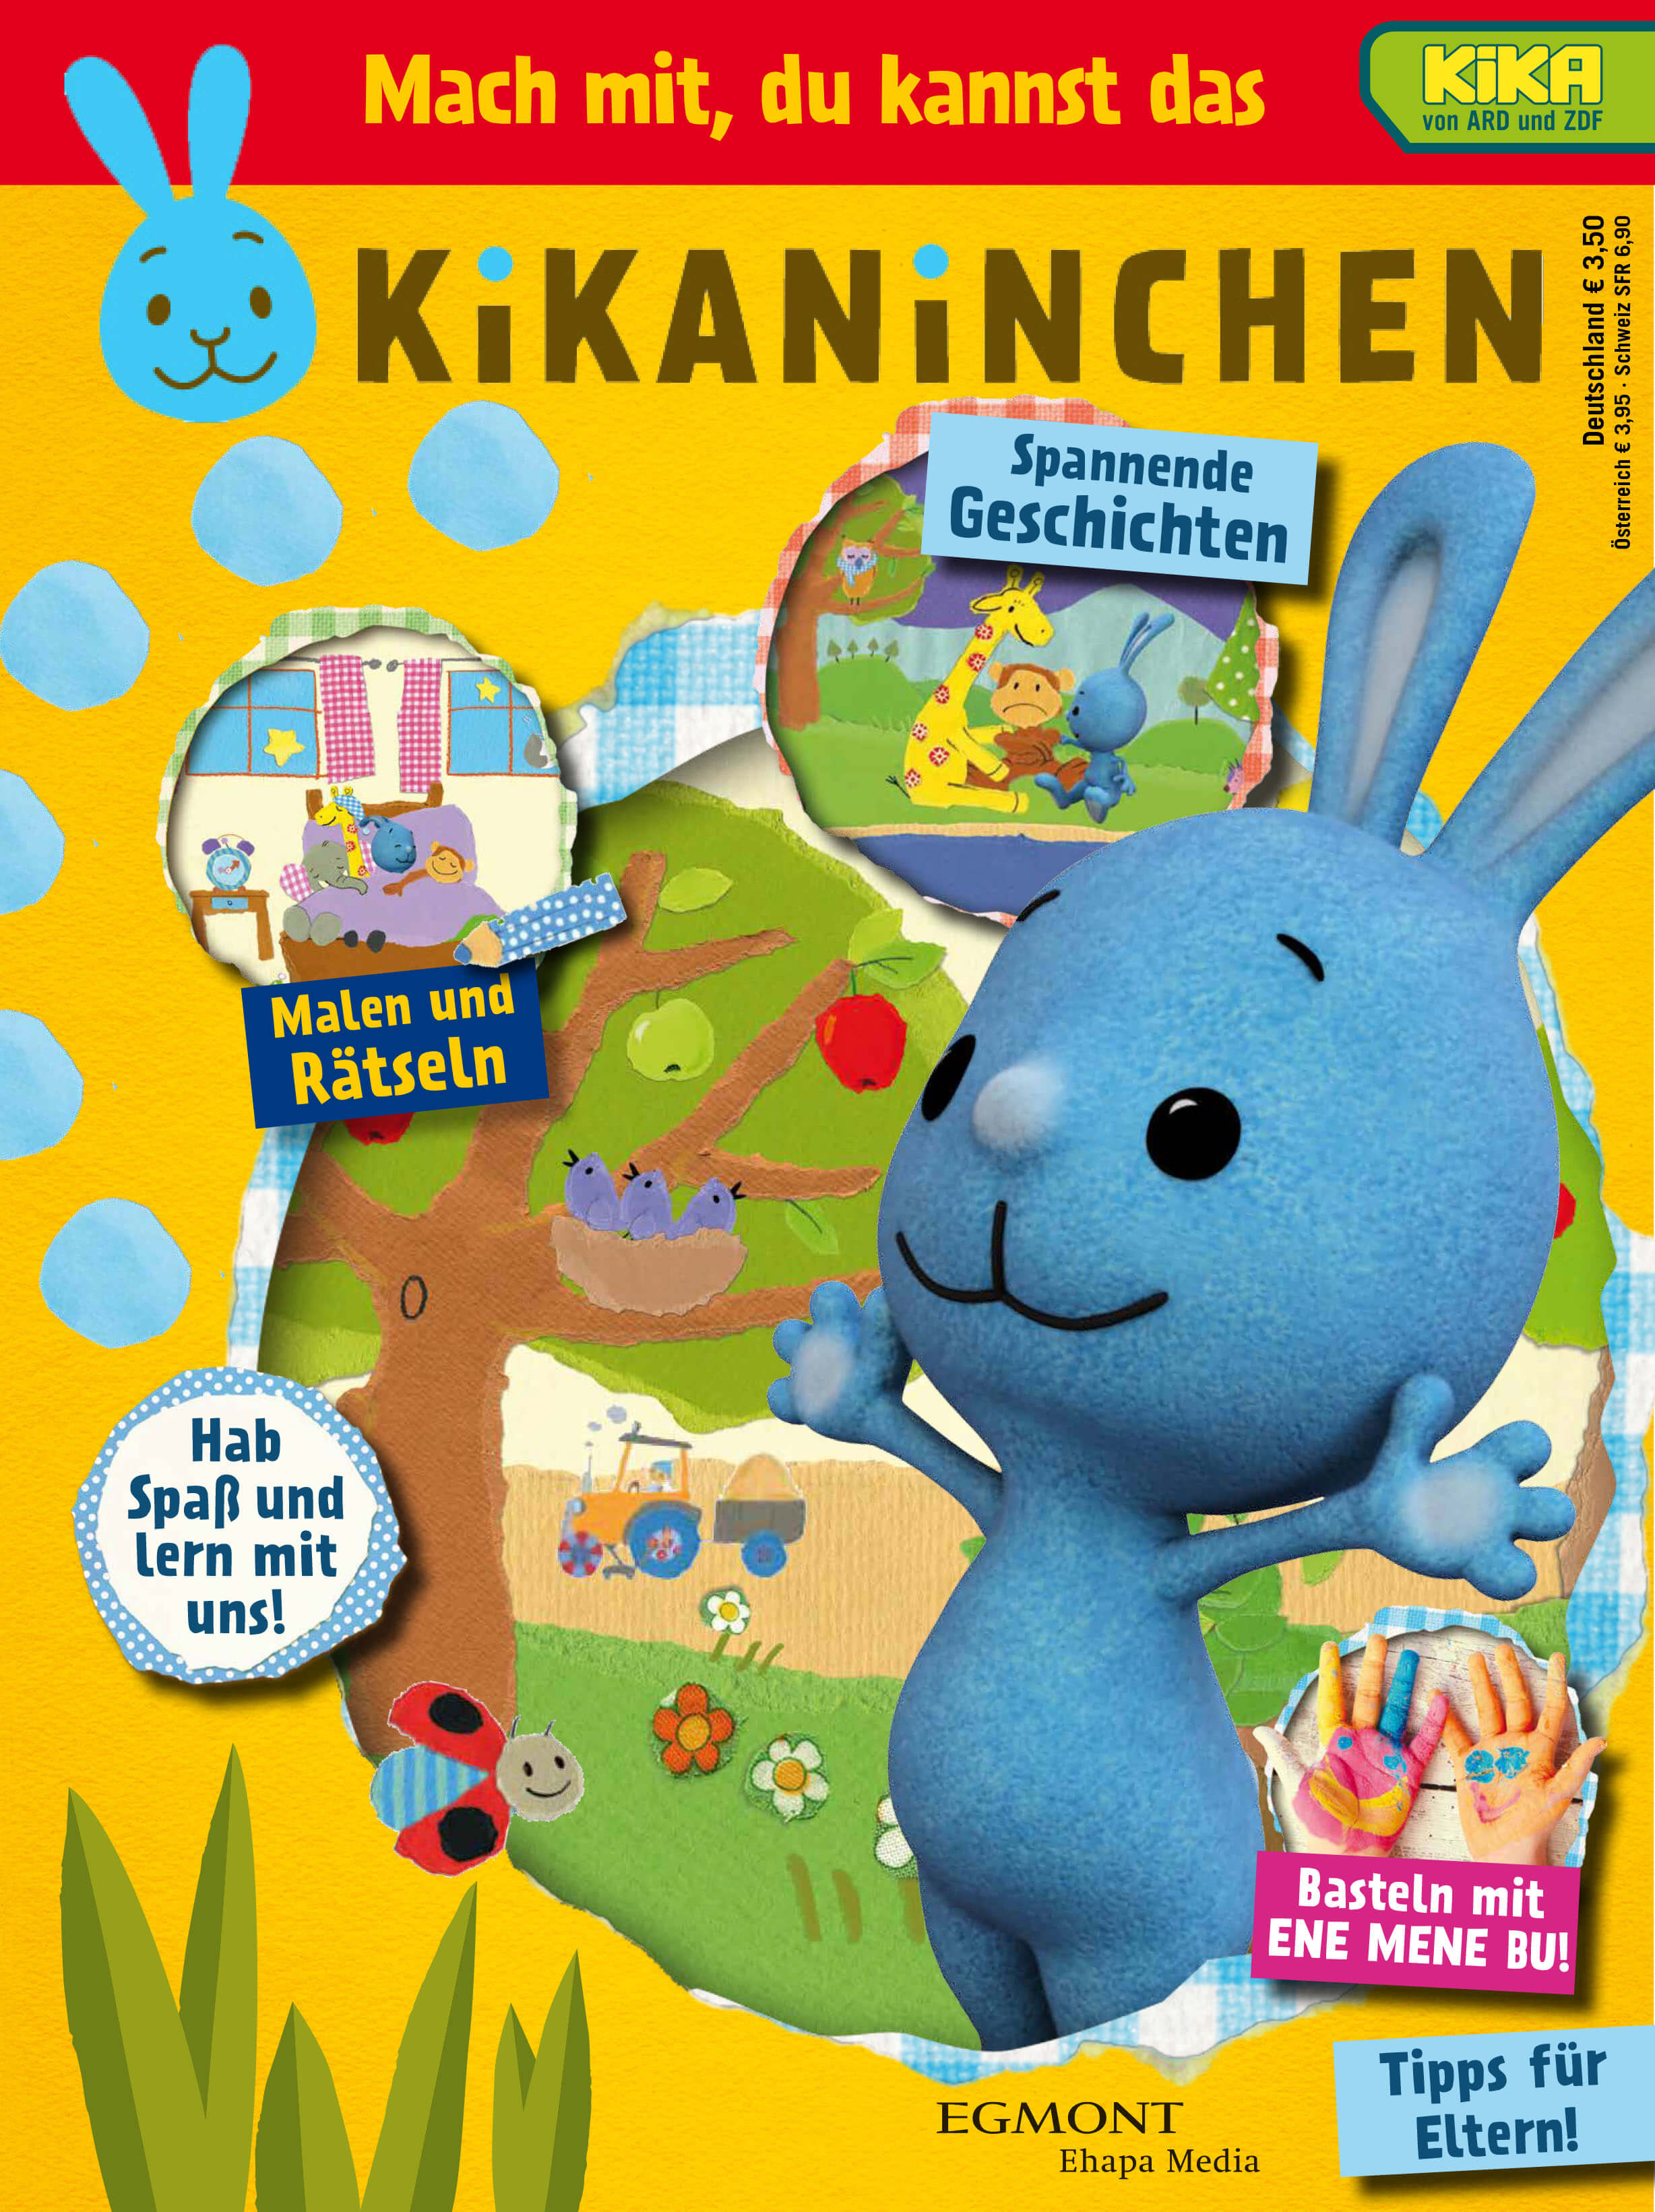 kikaninchen-magazin-01-2017-comickritik